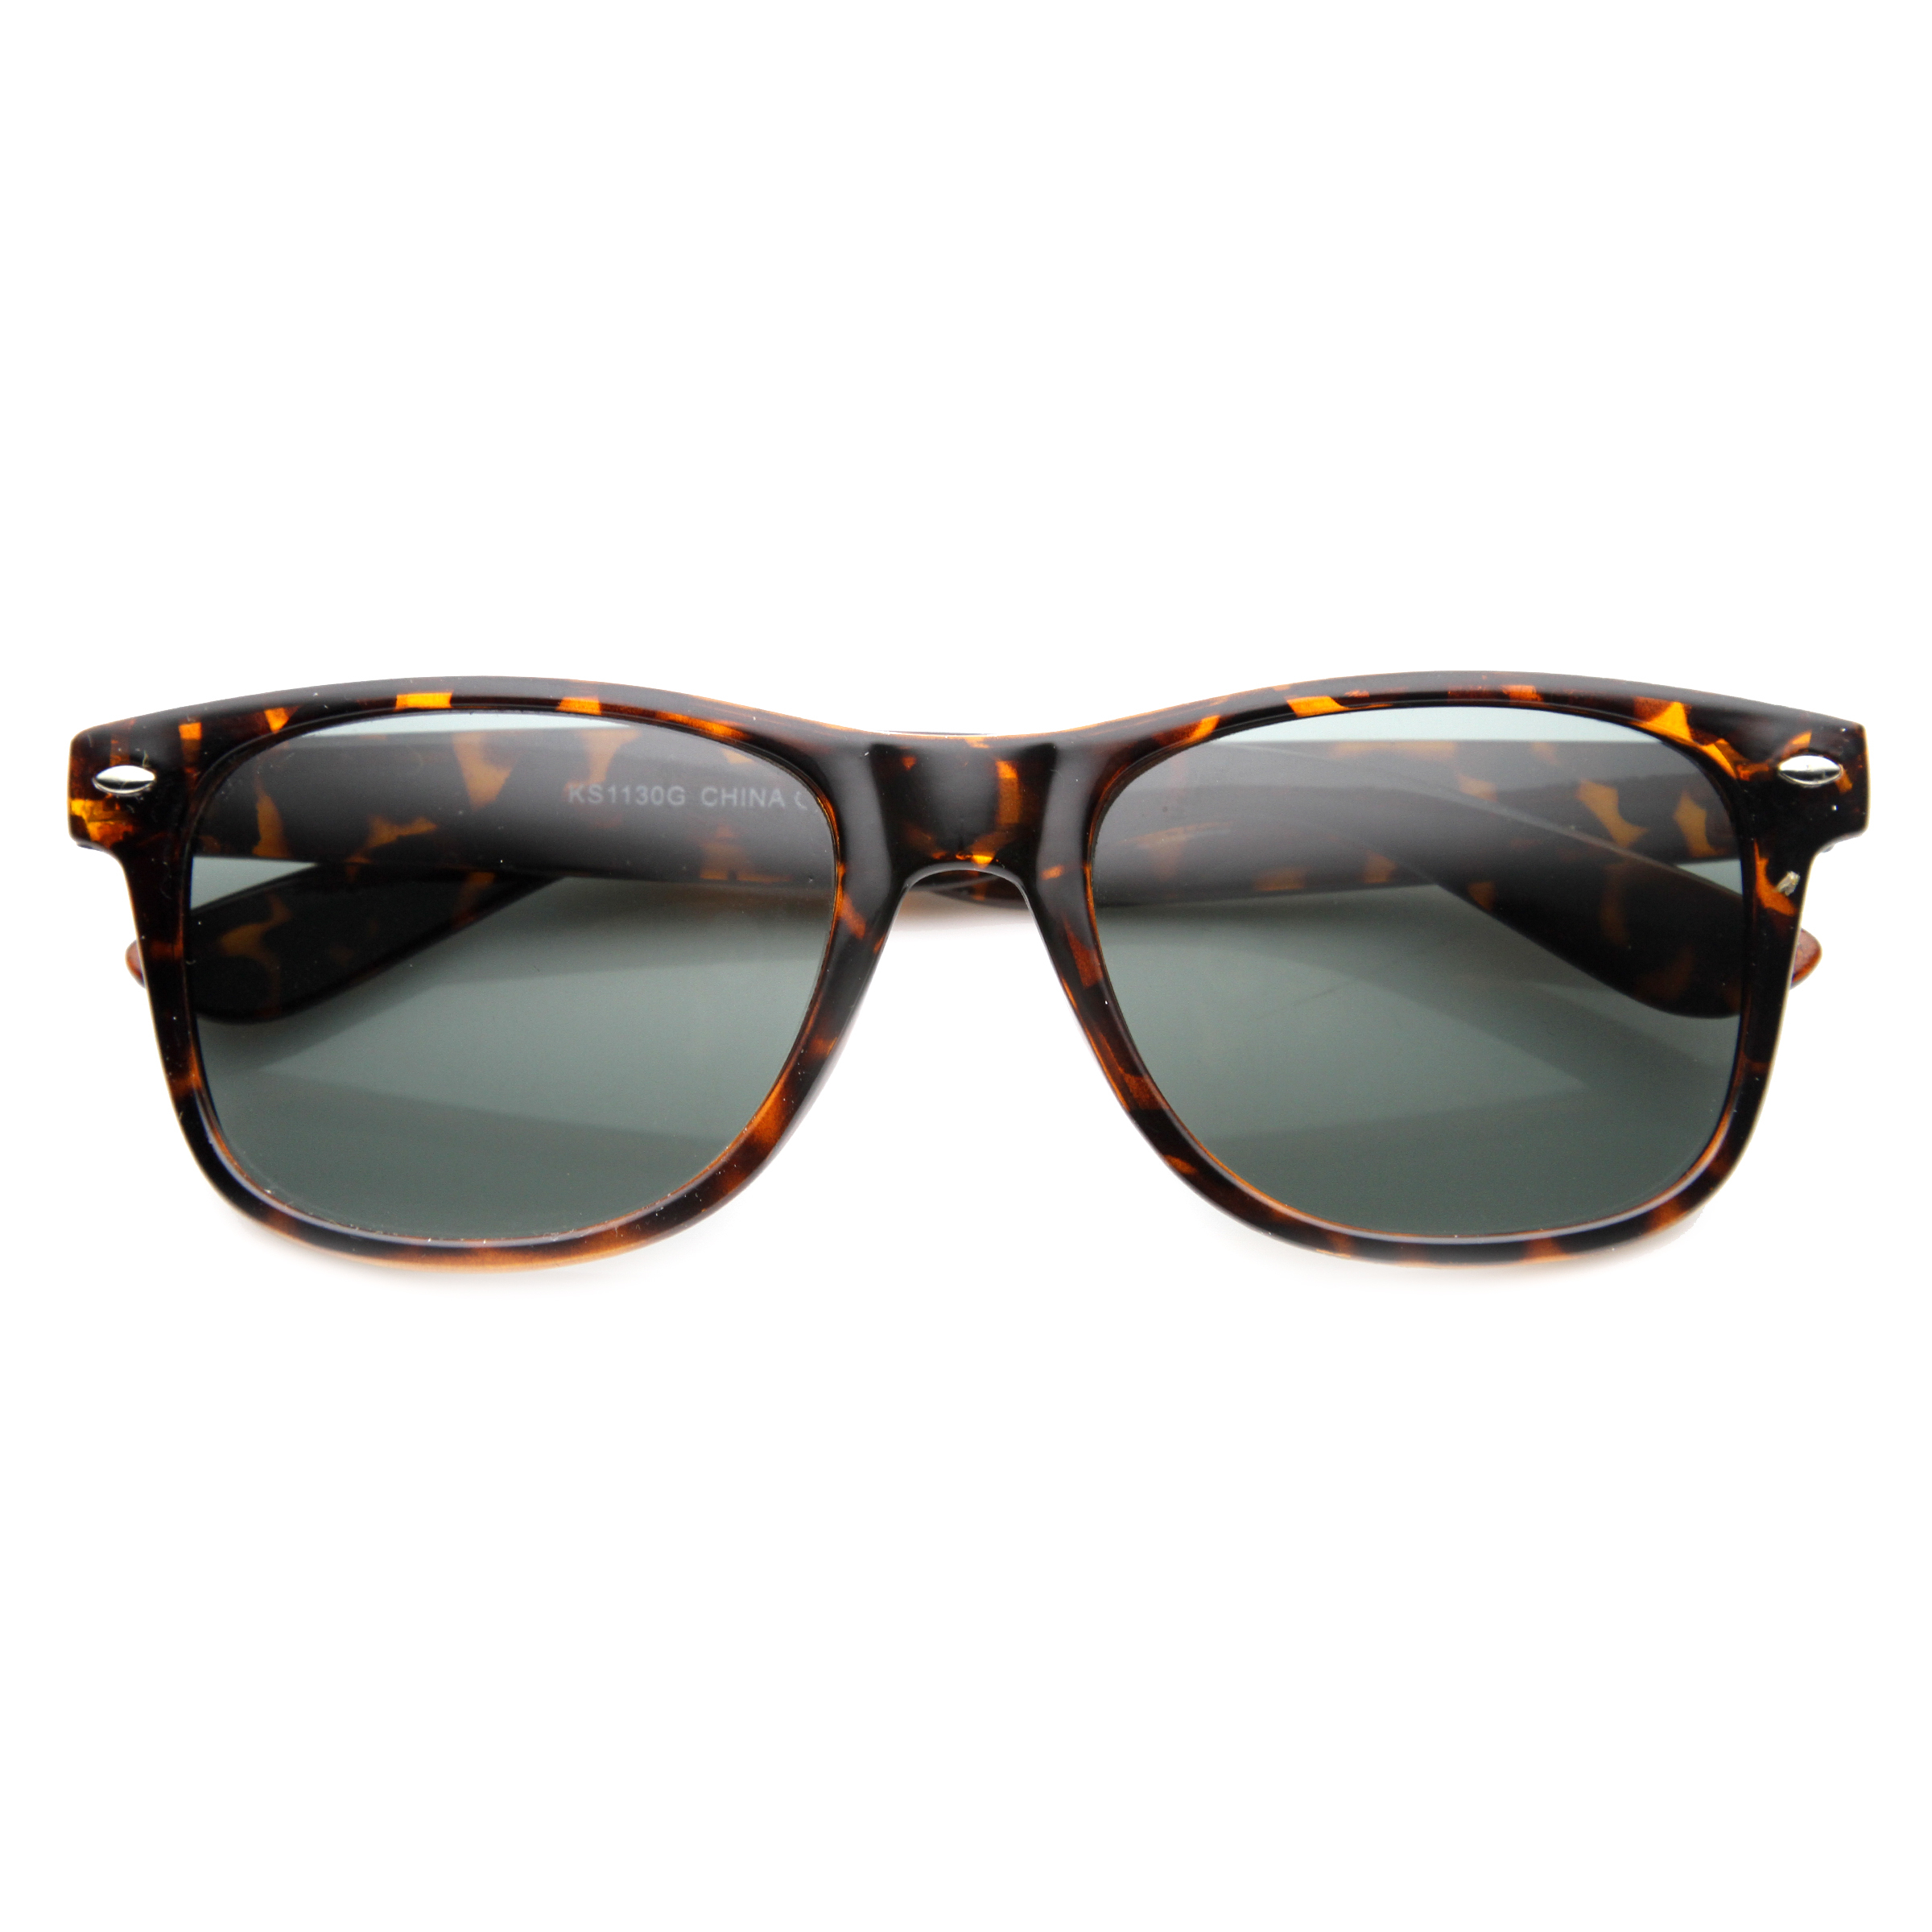 Classic 80s Retro Large Classic Horned Rim Style Sunglasses Eyewear - 8452 - Shiny Black / Smoke